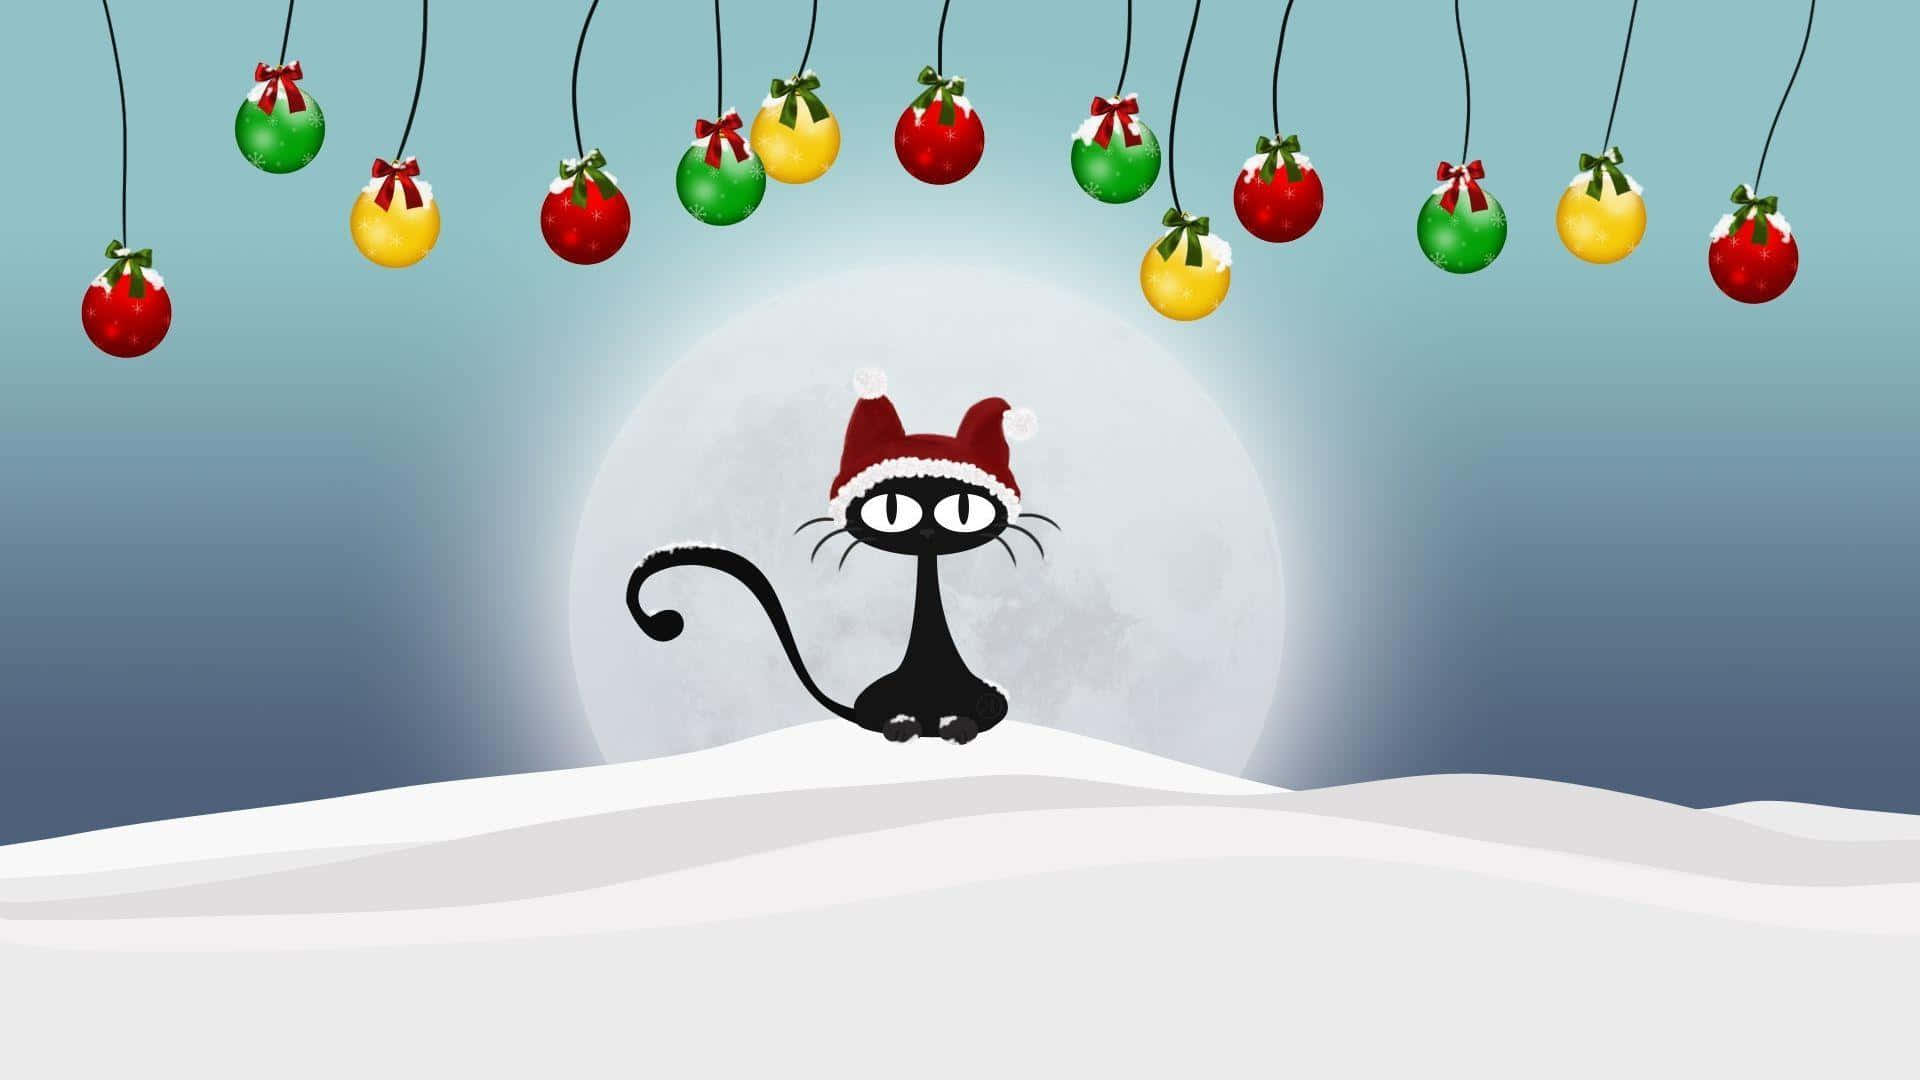 Fondode Pantalla Divertido De Navidad Para Zoom Con Un Gato Negro Dibujado En Caricatura.